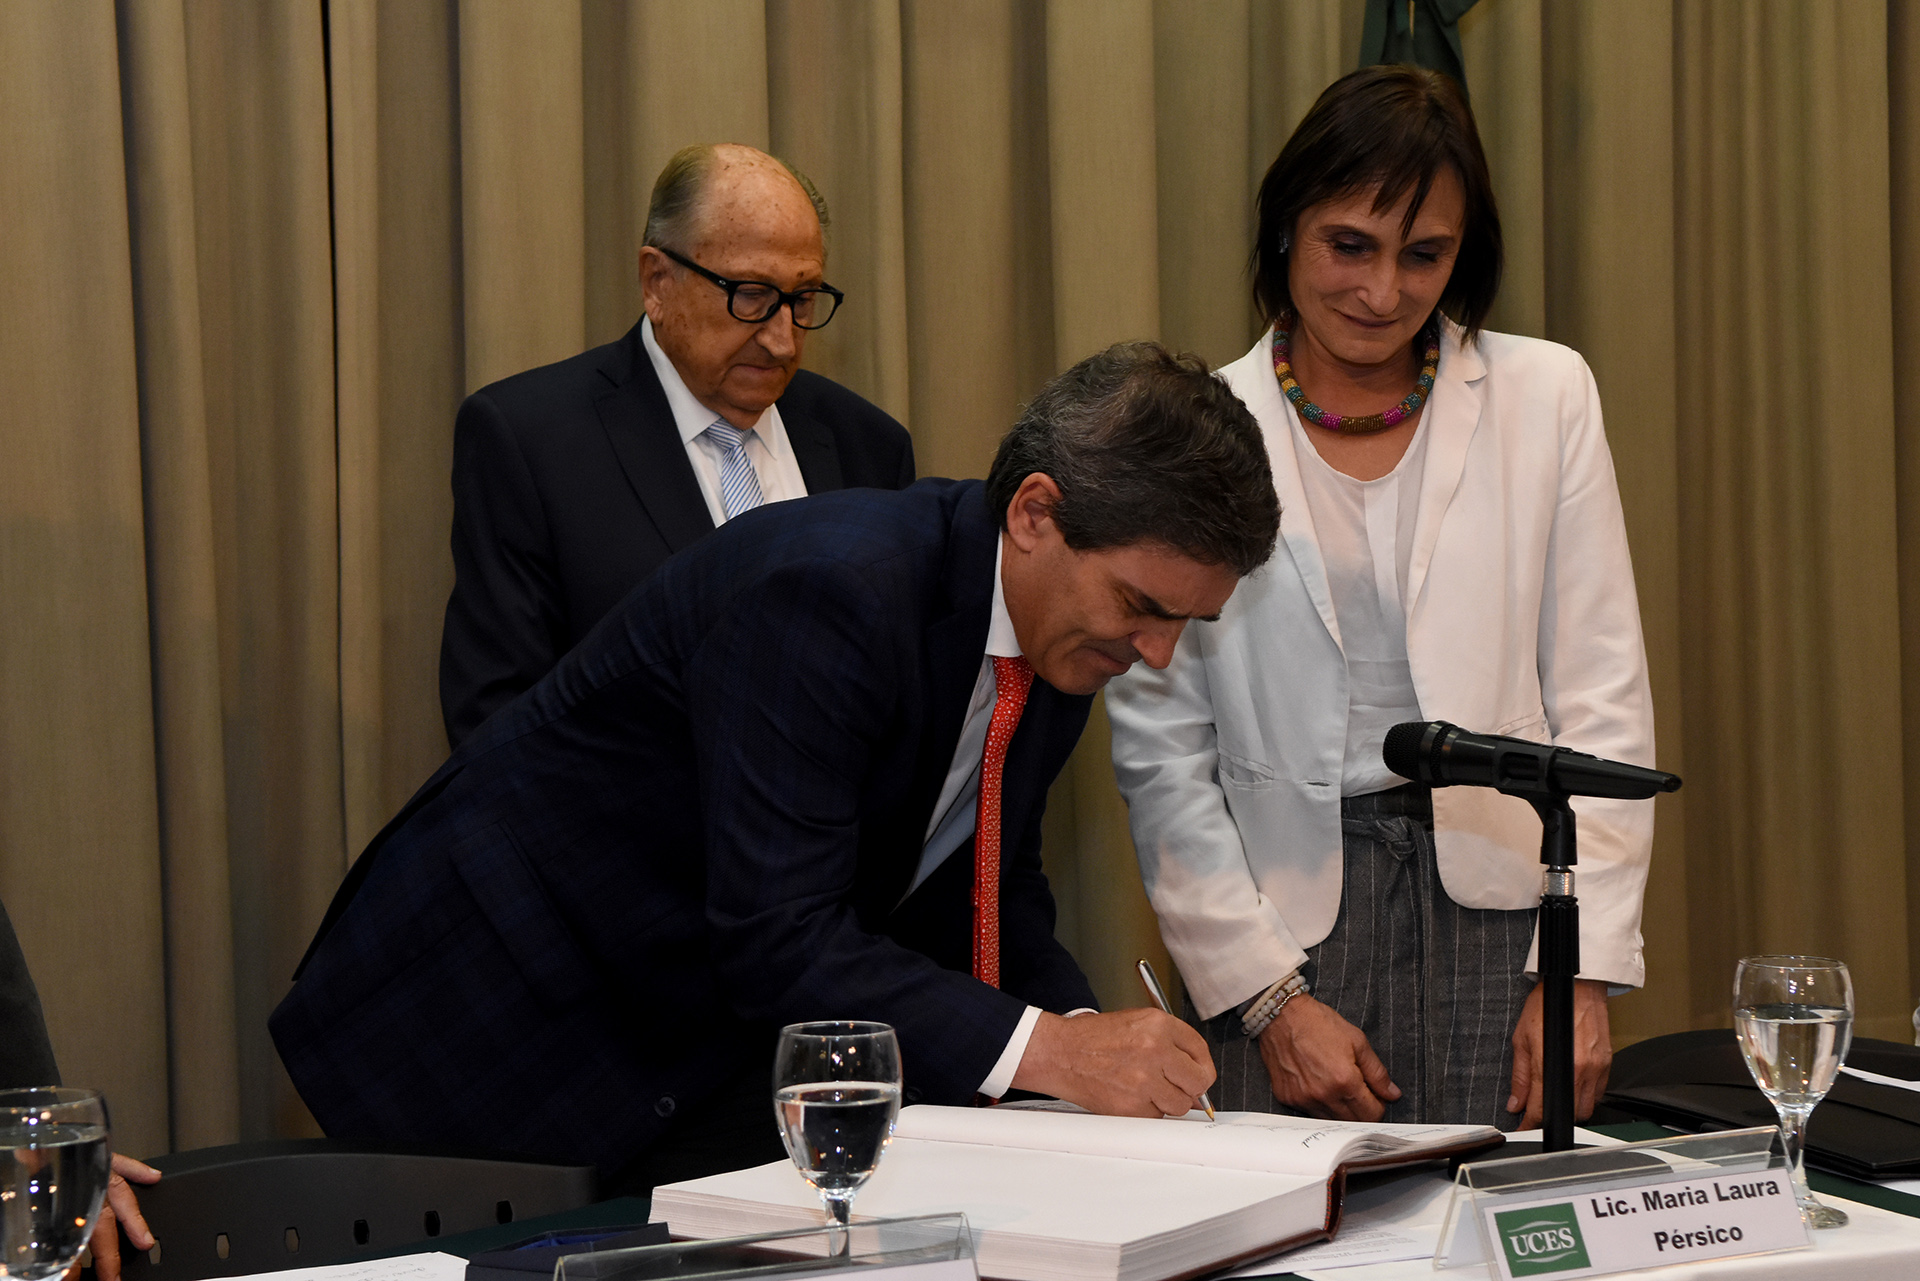 El ministro de Salud porteño, Fernán Quirós, firmando el Libro de Honor de UCES junto a María Laura Pérsico, vicerrectora de esa universidad 
